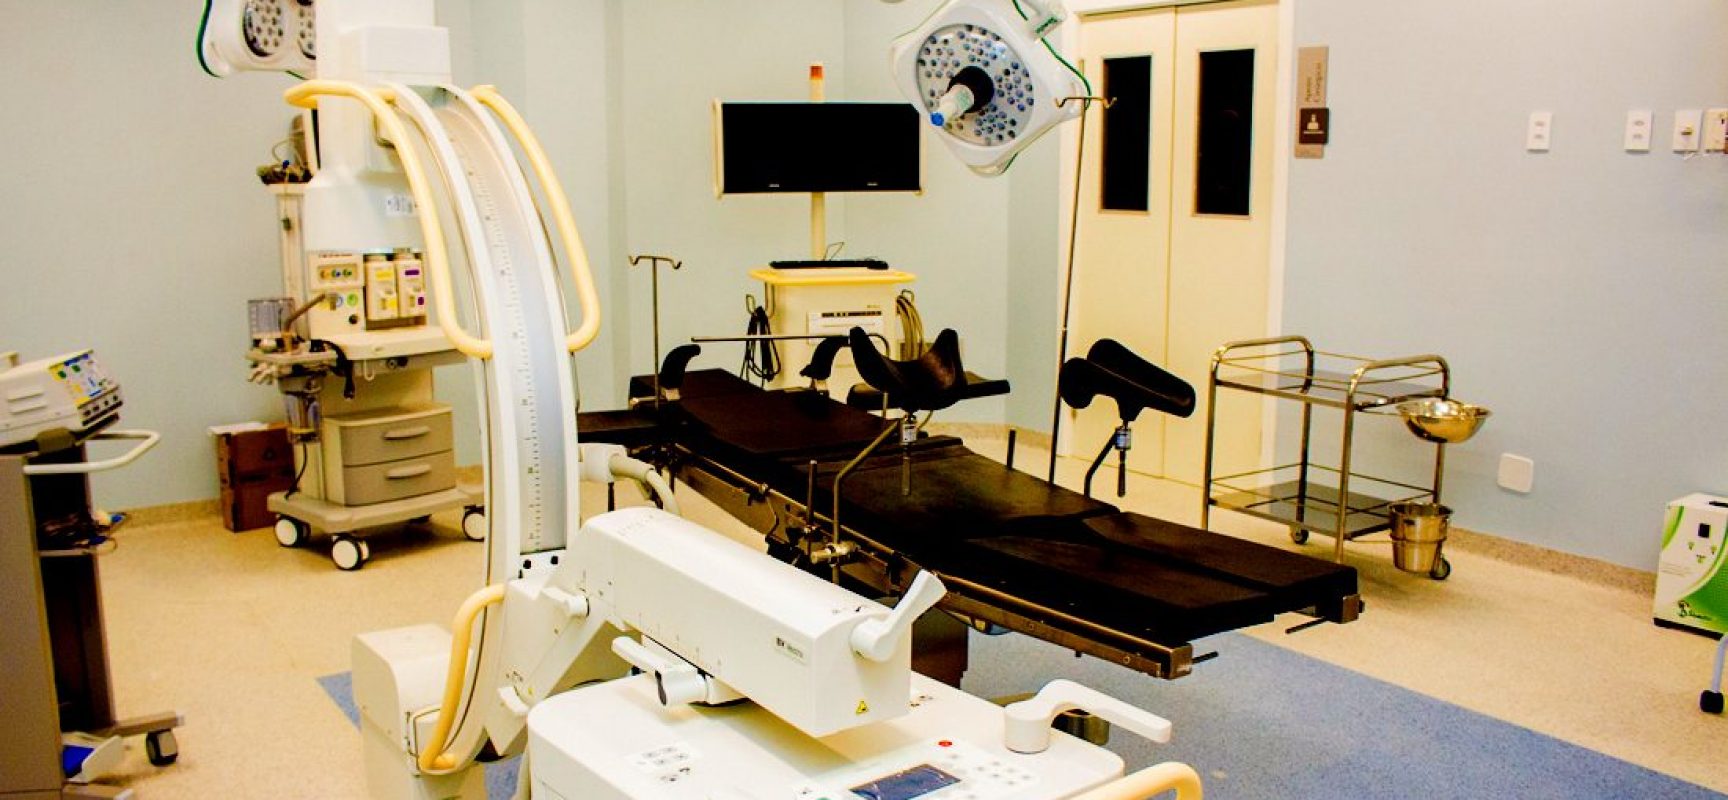 HRCC entrega resultados das biópsias realizadas no Mutirão de Cirurgias Eletivas